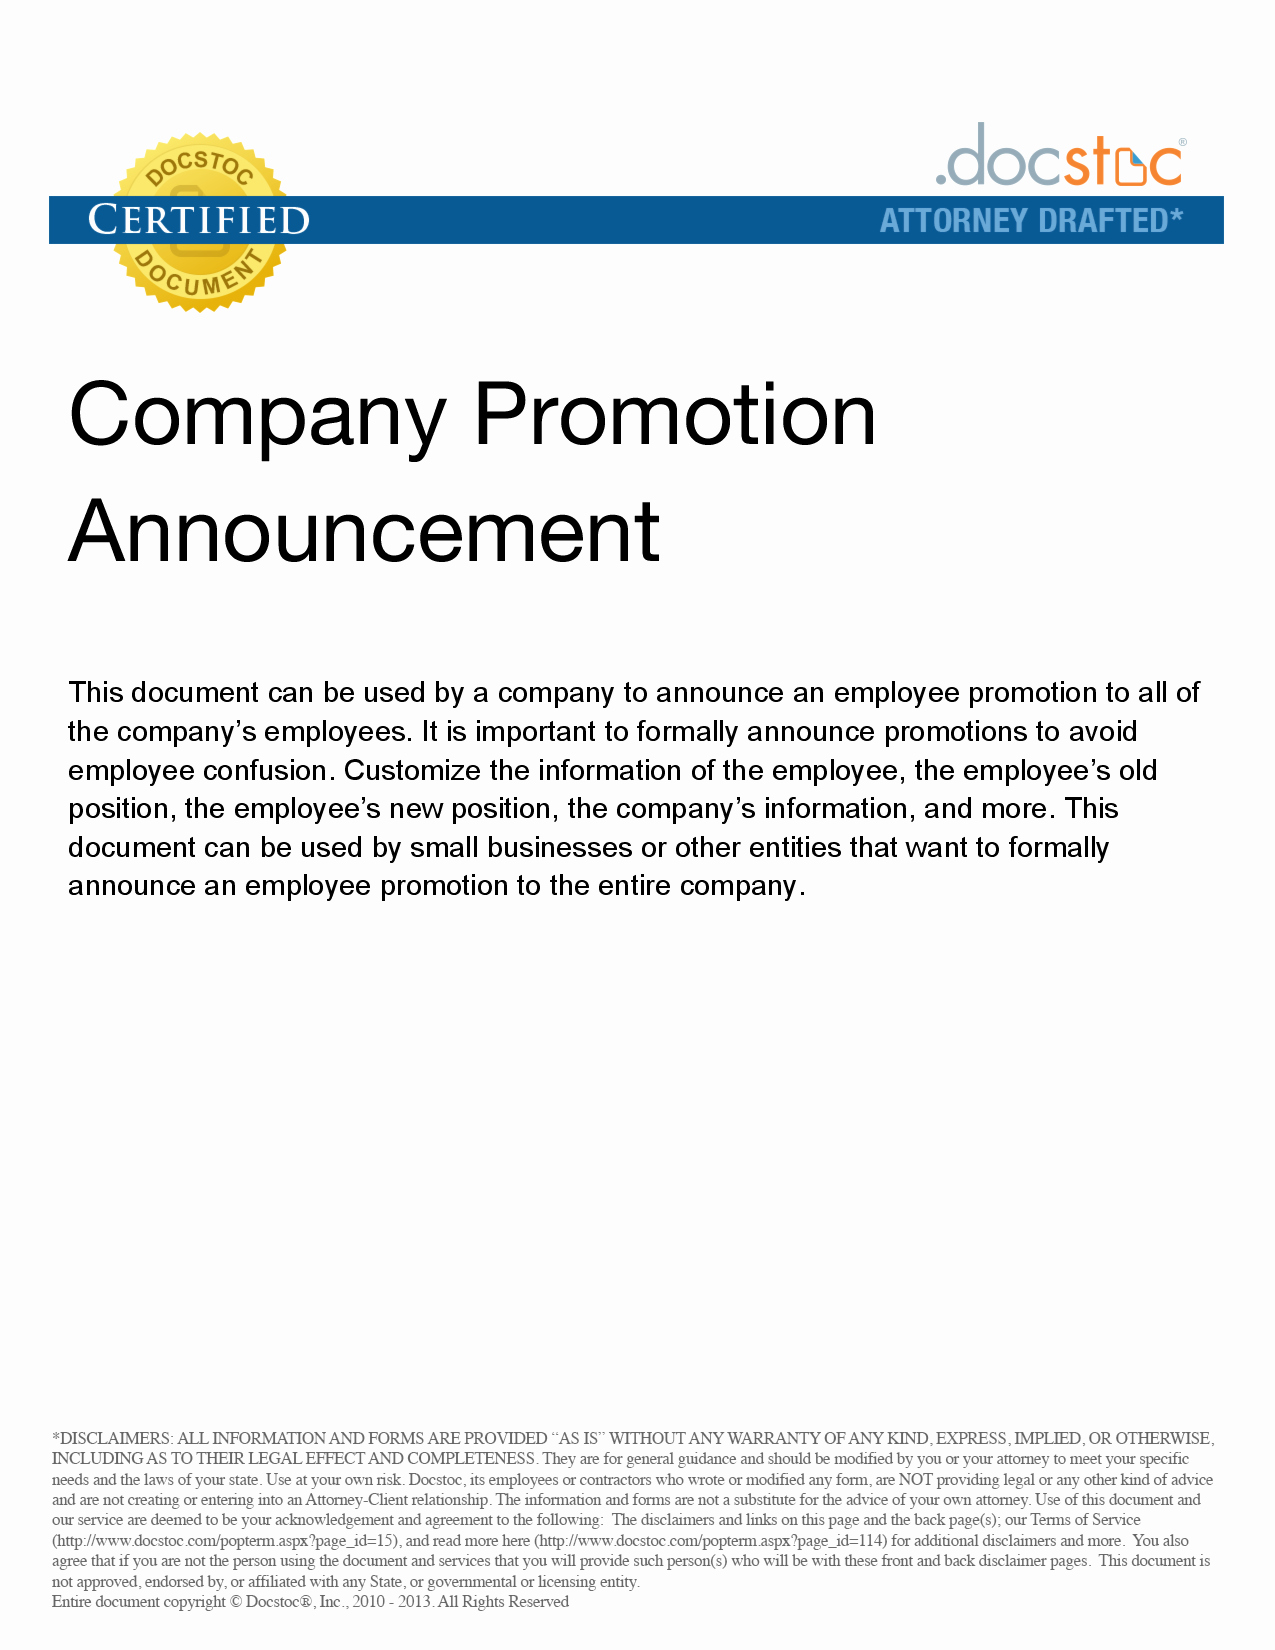 Promotion Announcement Letters Luxury Best S Of Job Promotion Announcement Examples